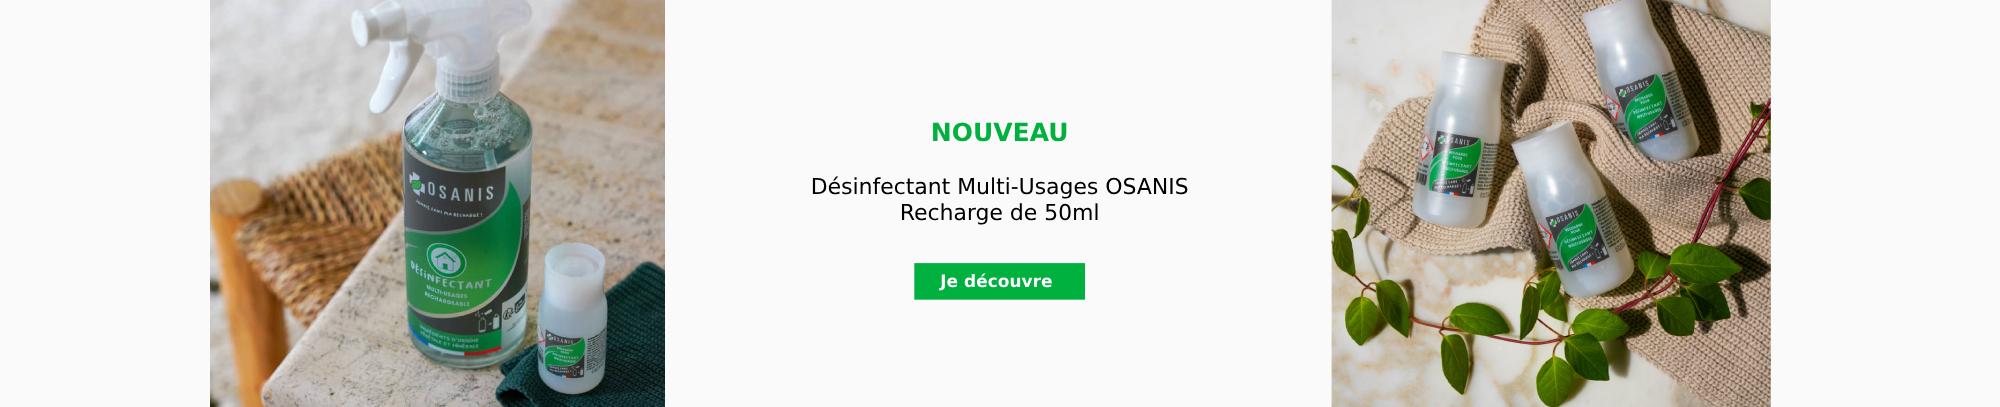 Nouveau : Désinfectant Multi-Usages OSANIS - Recharge De 50ml